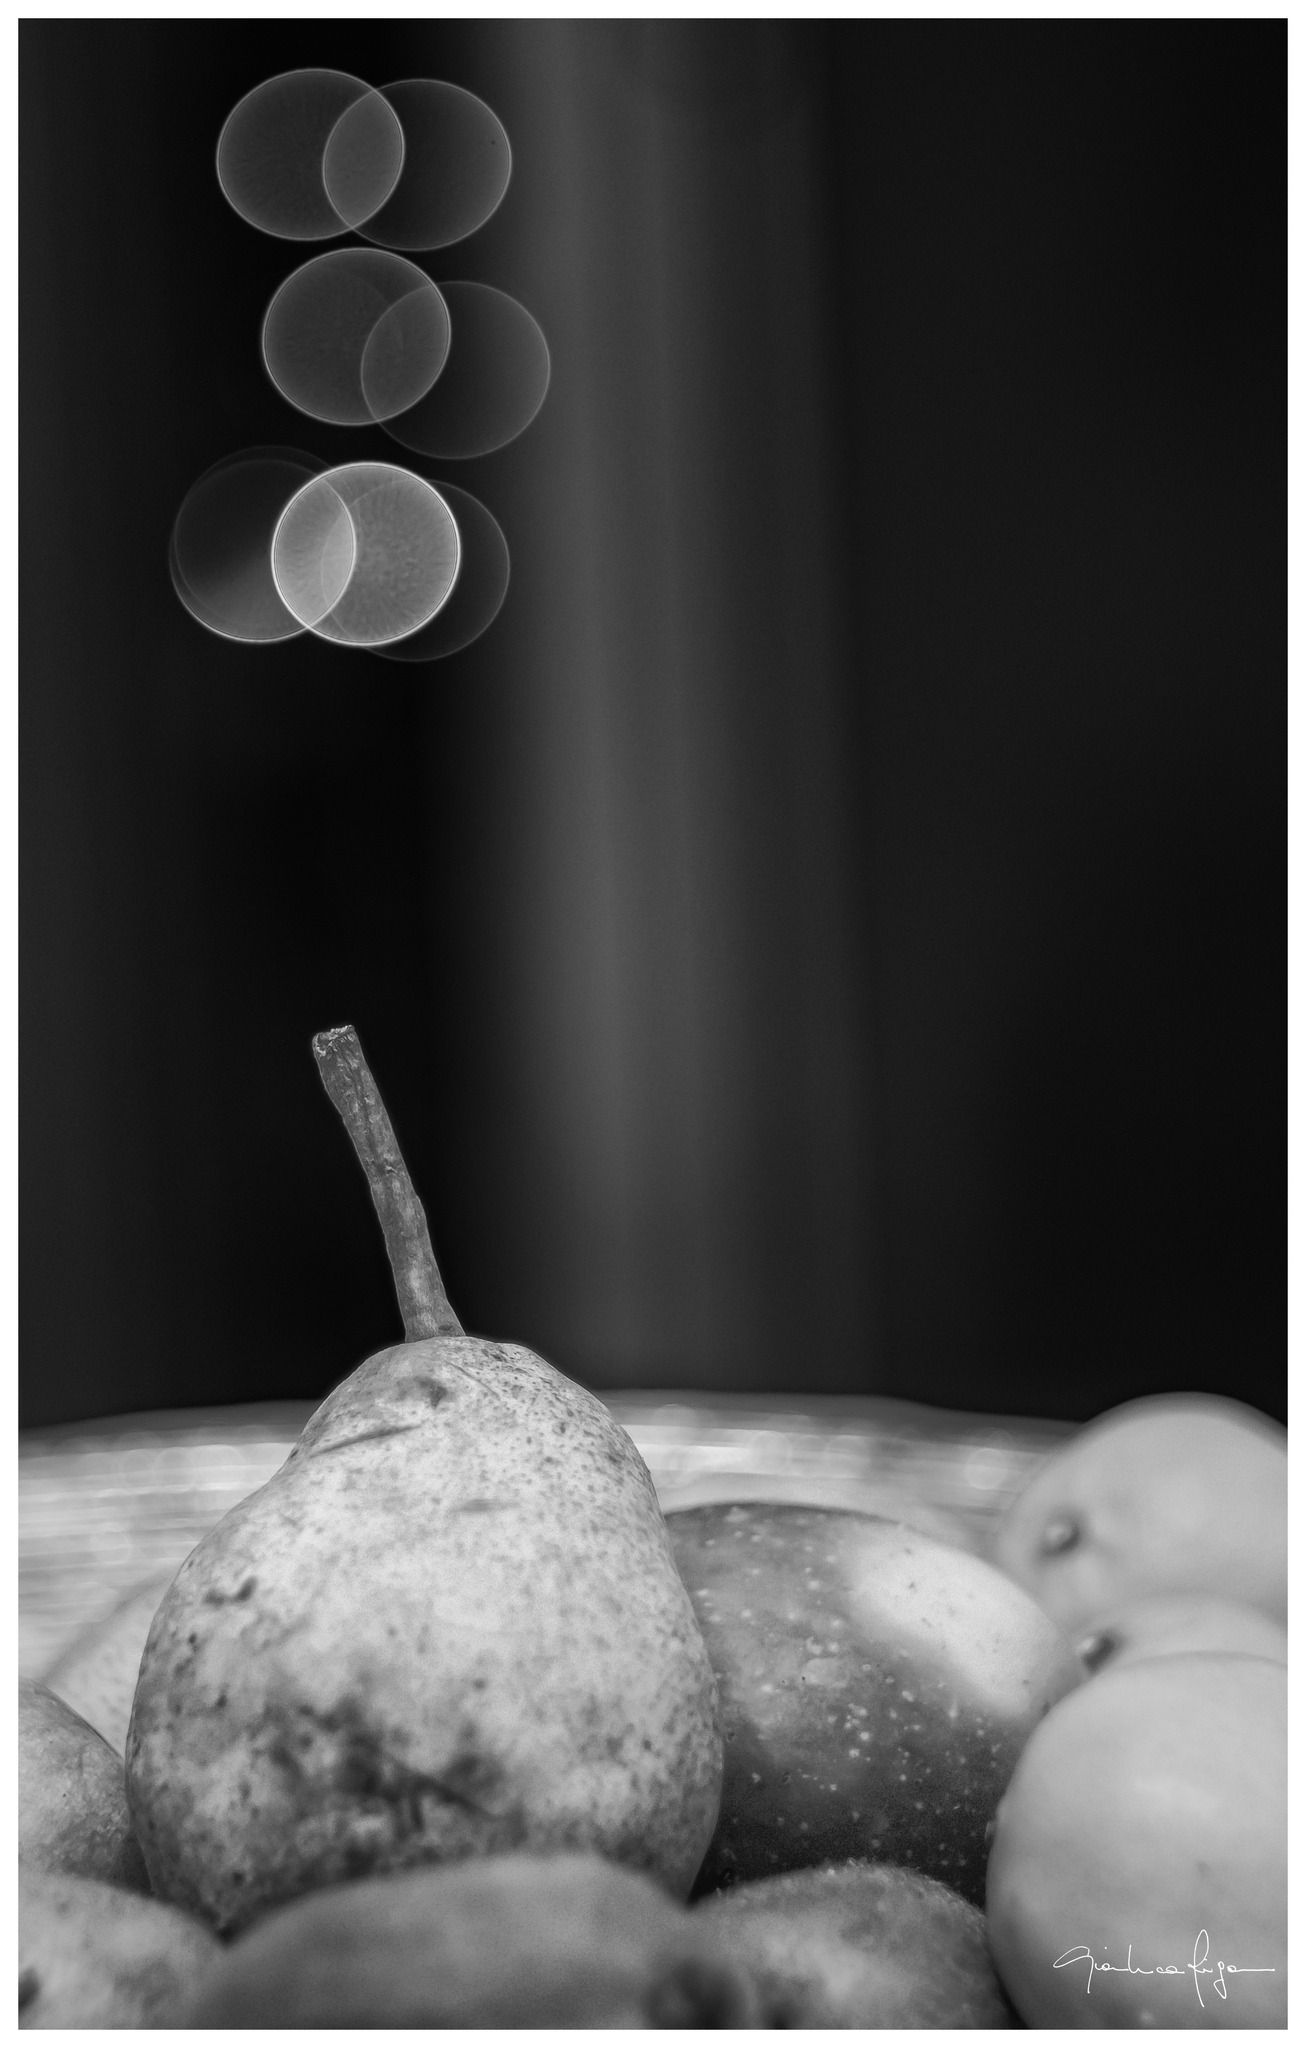 Pear still life...